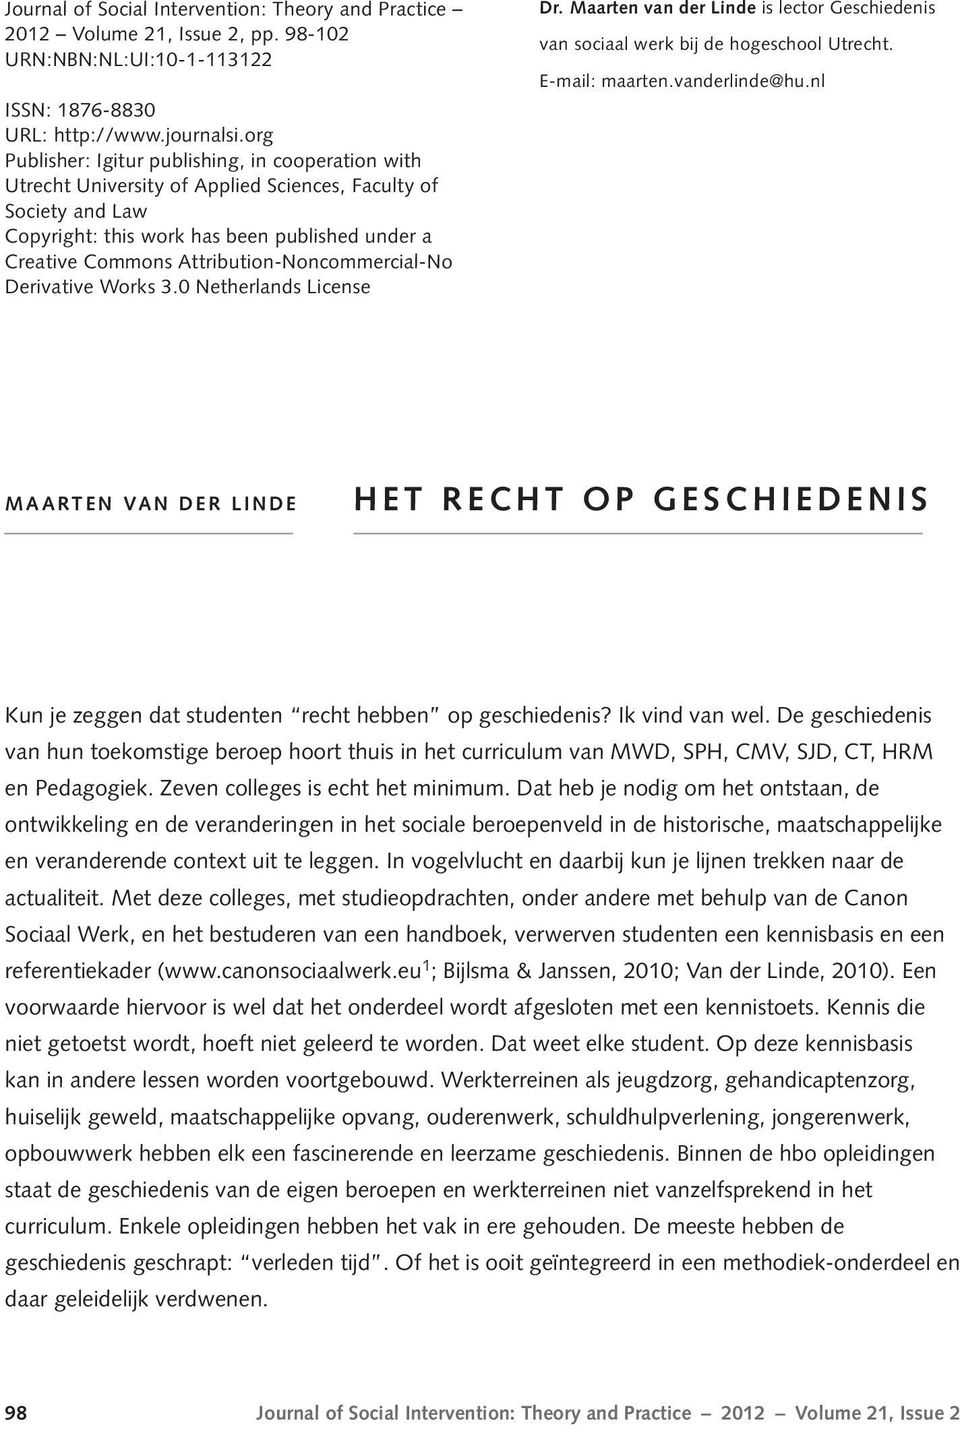 Attribution-Noncommercial-No Derivative Works 3.0 Netherlands License Dr. Maarten van der Linde is lector Geschiedenis van sociaal werk bij de hogeschool Utrecht. E-mail: maarten.vanderlinde@hu.